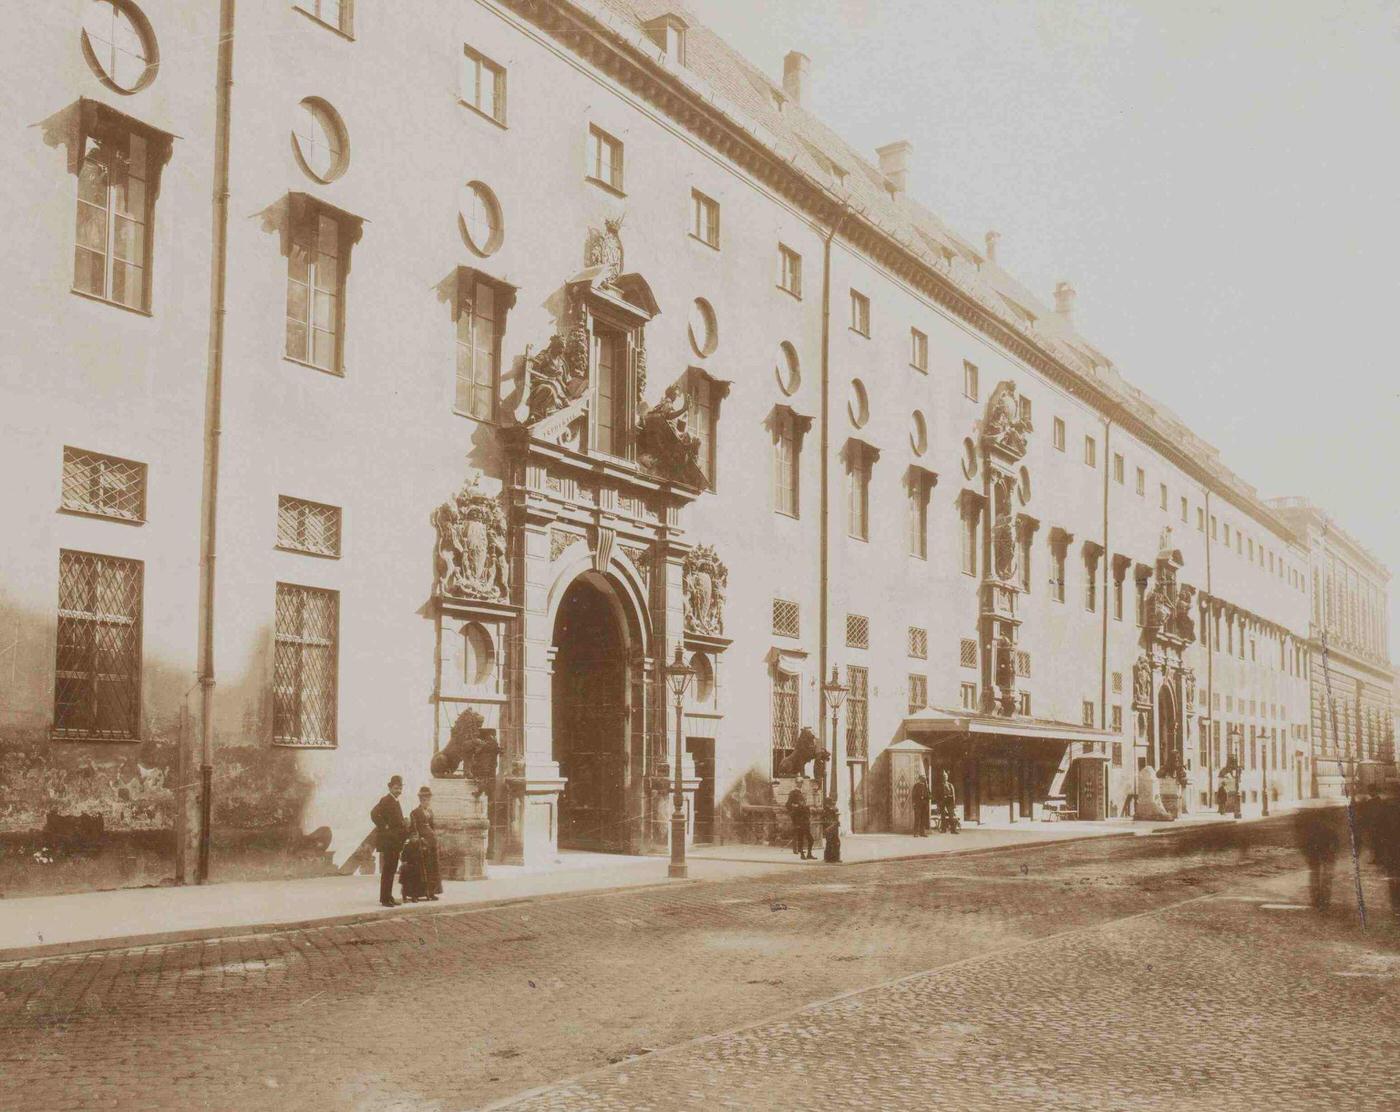 Konigliche alte Residenz, Munich, 1880